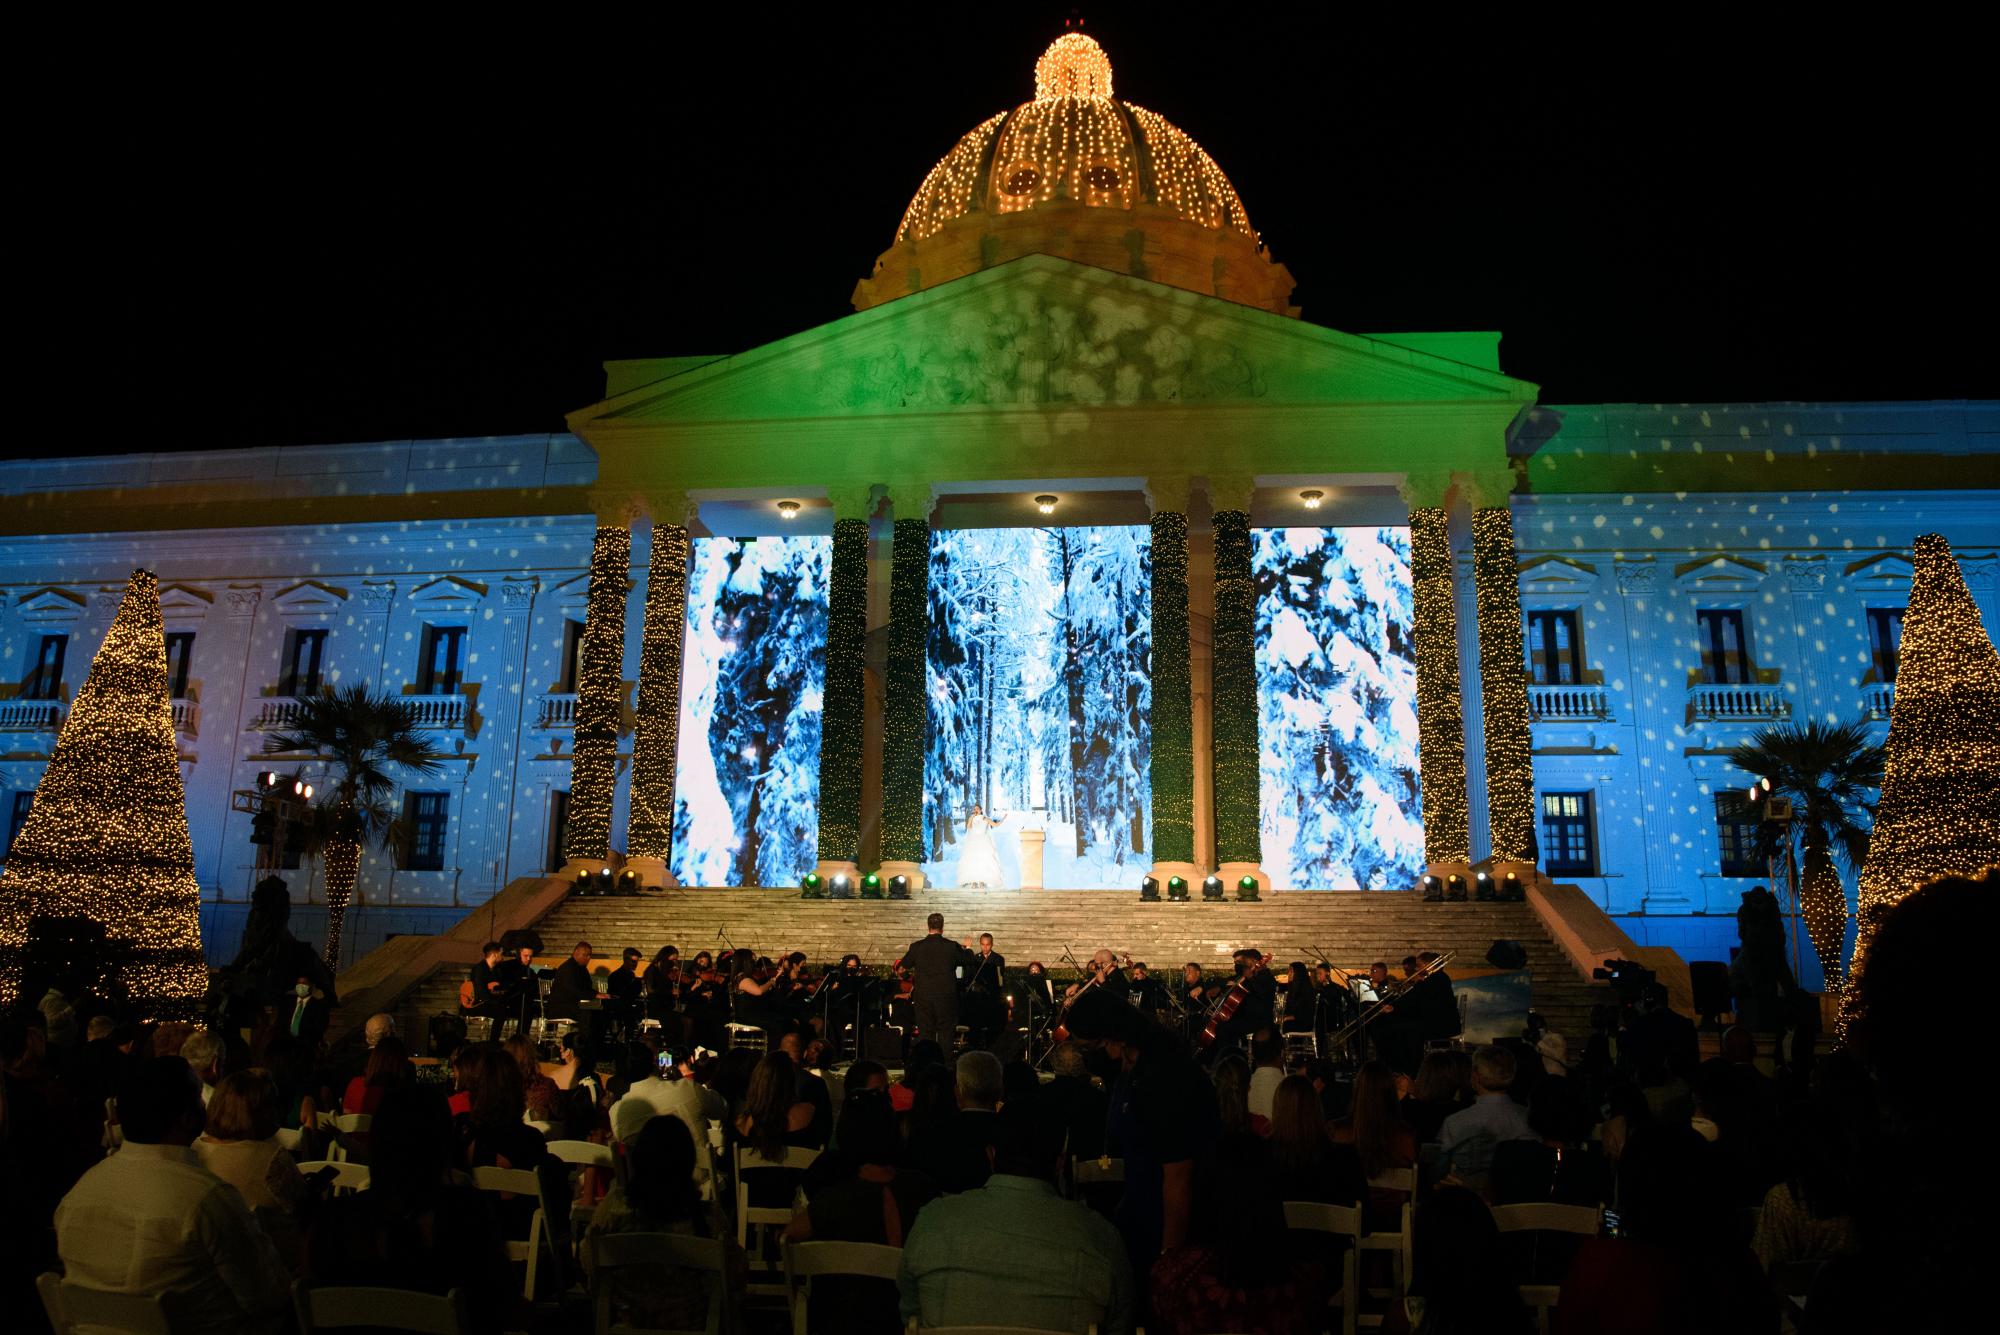 La Navidad llenó de color y luces al Palacio Nacional